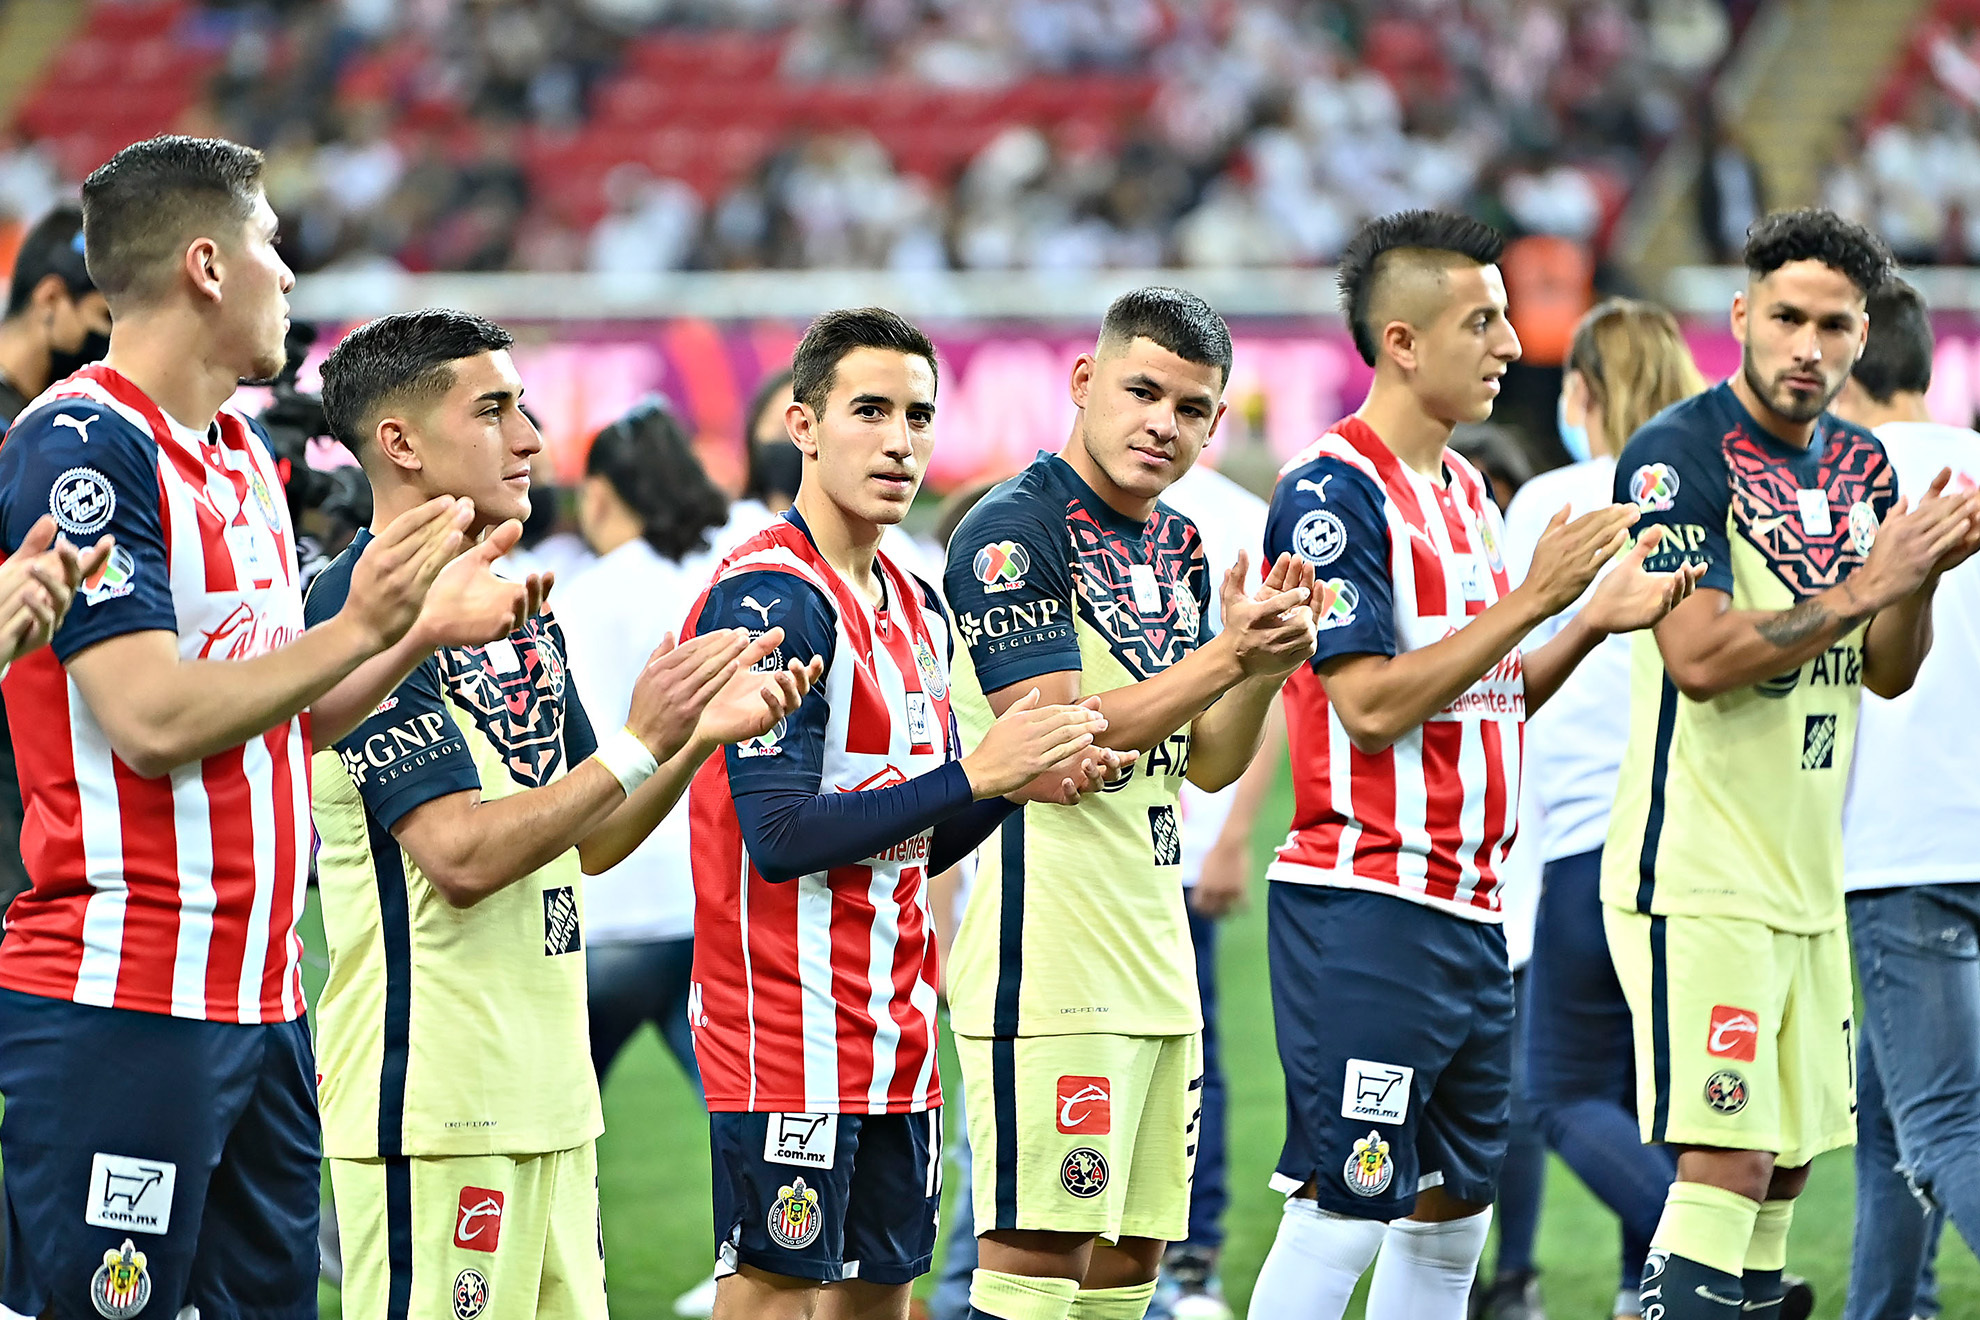 Aficionados sorprenden a los jugadores de Chivas y América con serenata. | Imago7